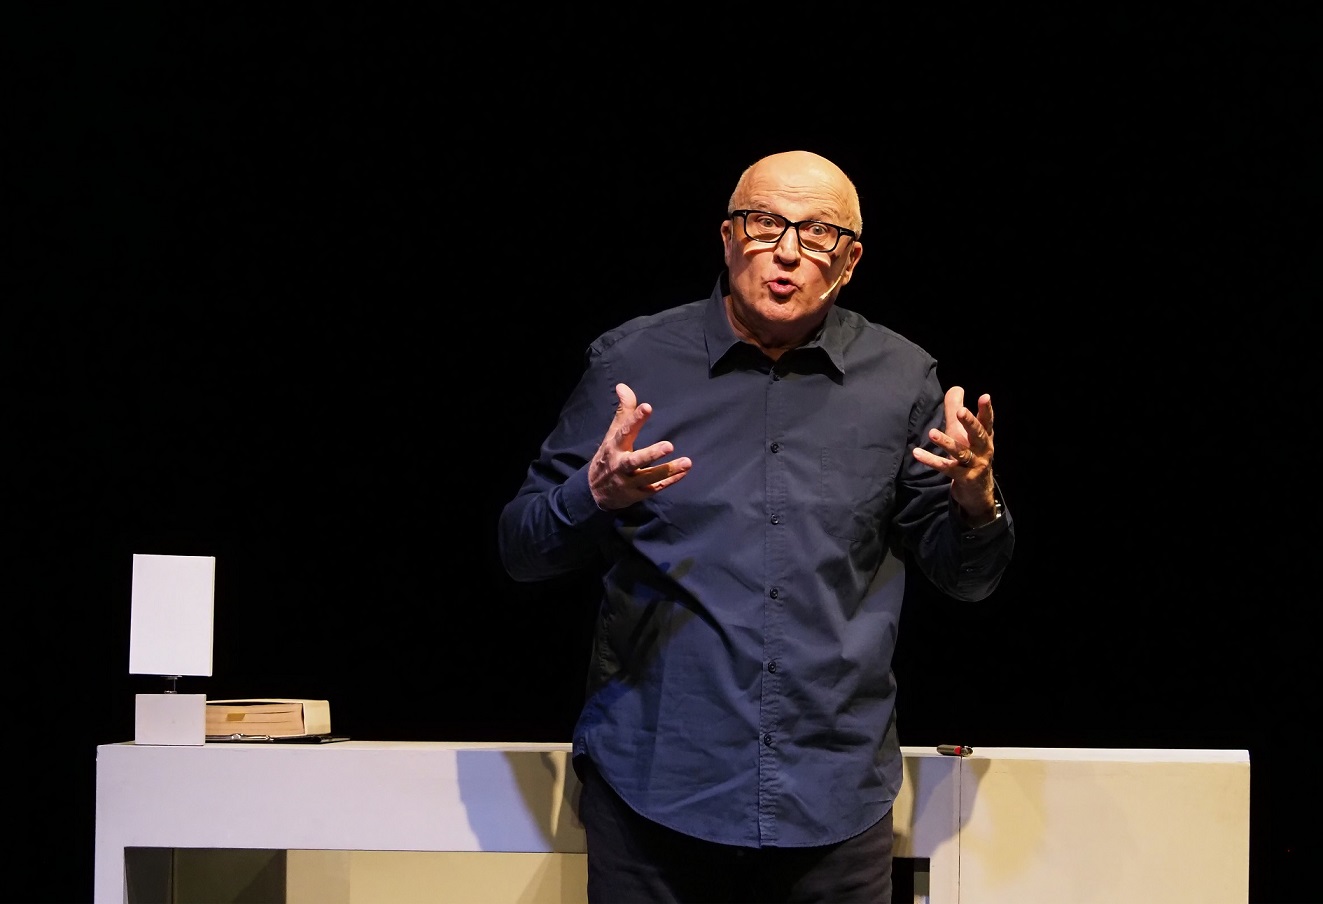 “La giovinezza è sopravvalutata”: sul palco del teatro Masaccio arriva Paolo Hendel 